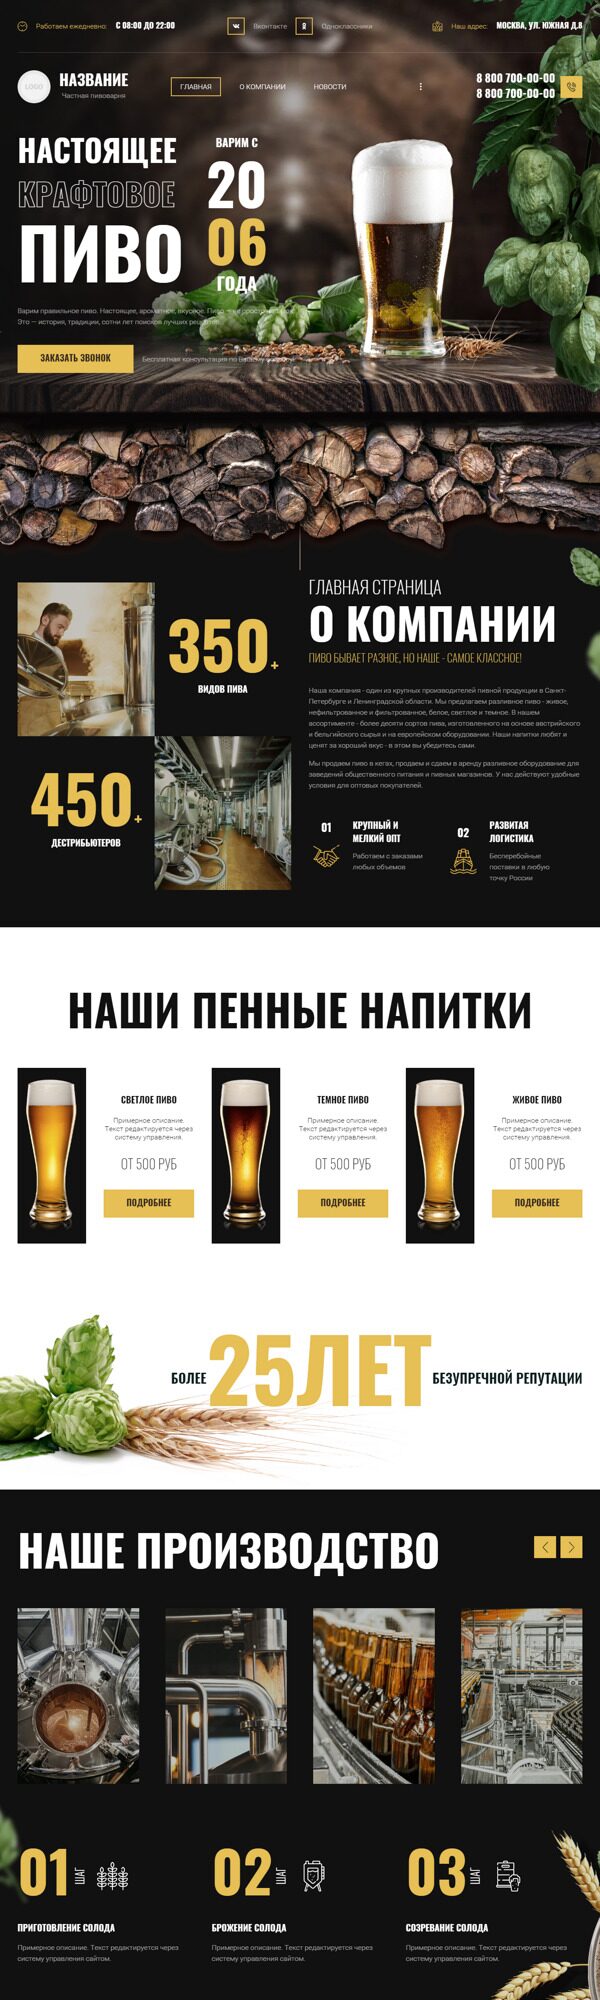 Готовый Сайт-Бизнес № 5091816 - Частная пивоварня (Десктопная версия)